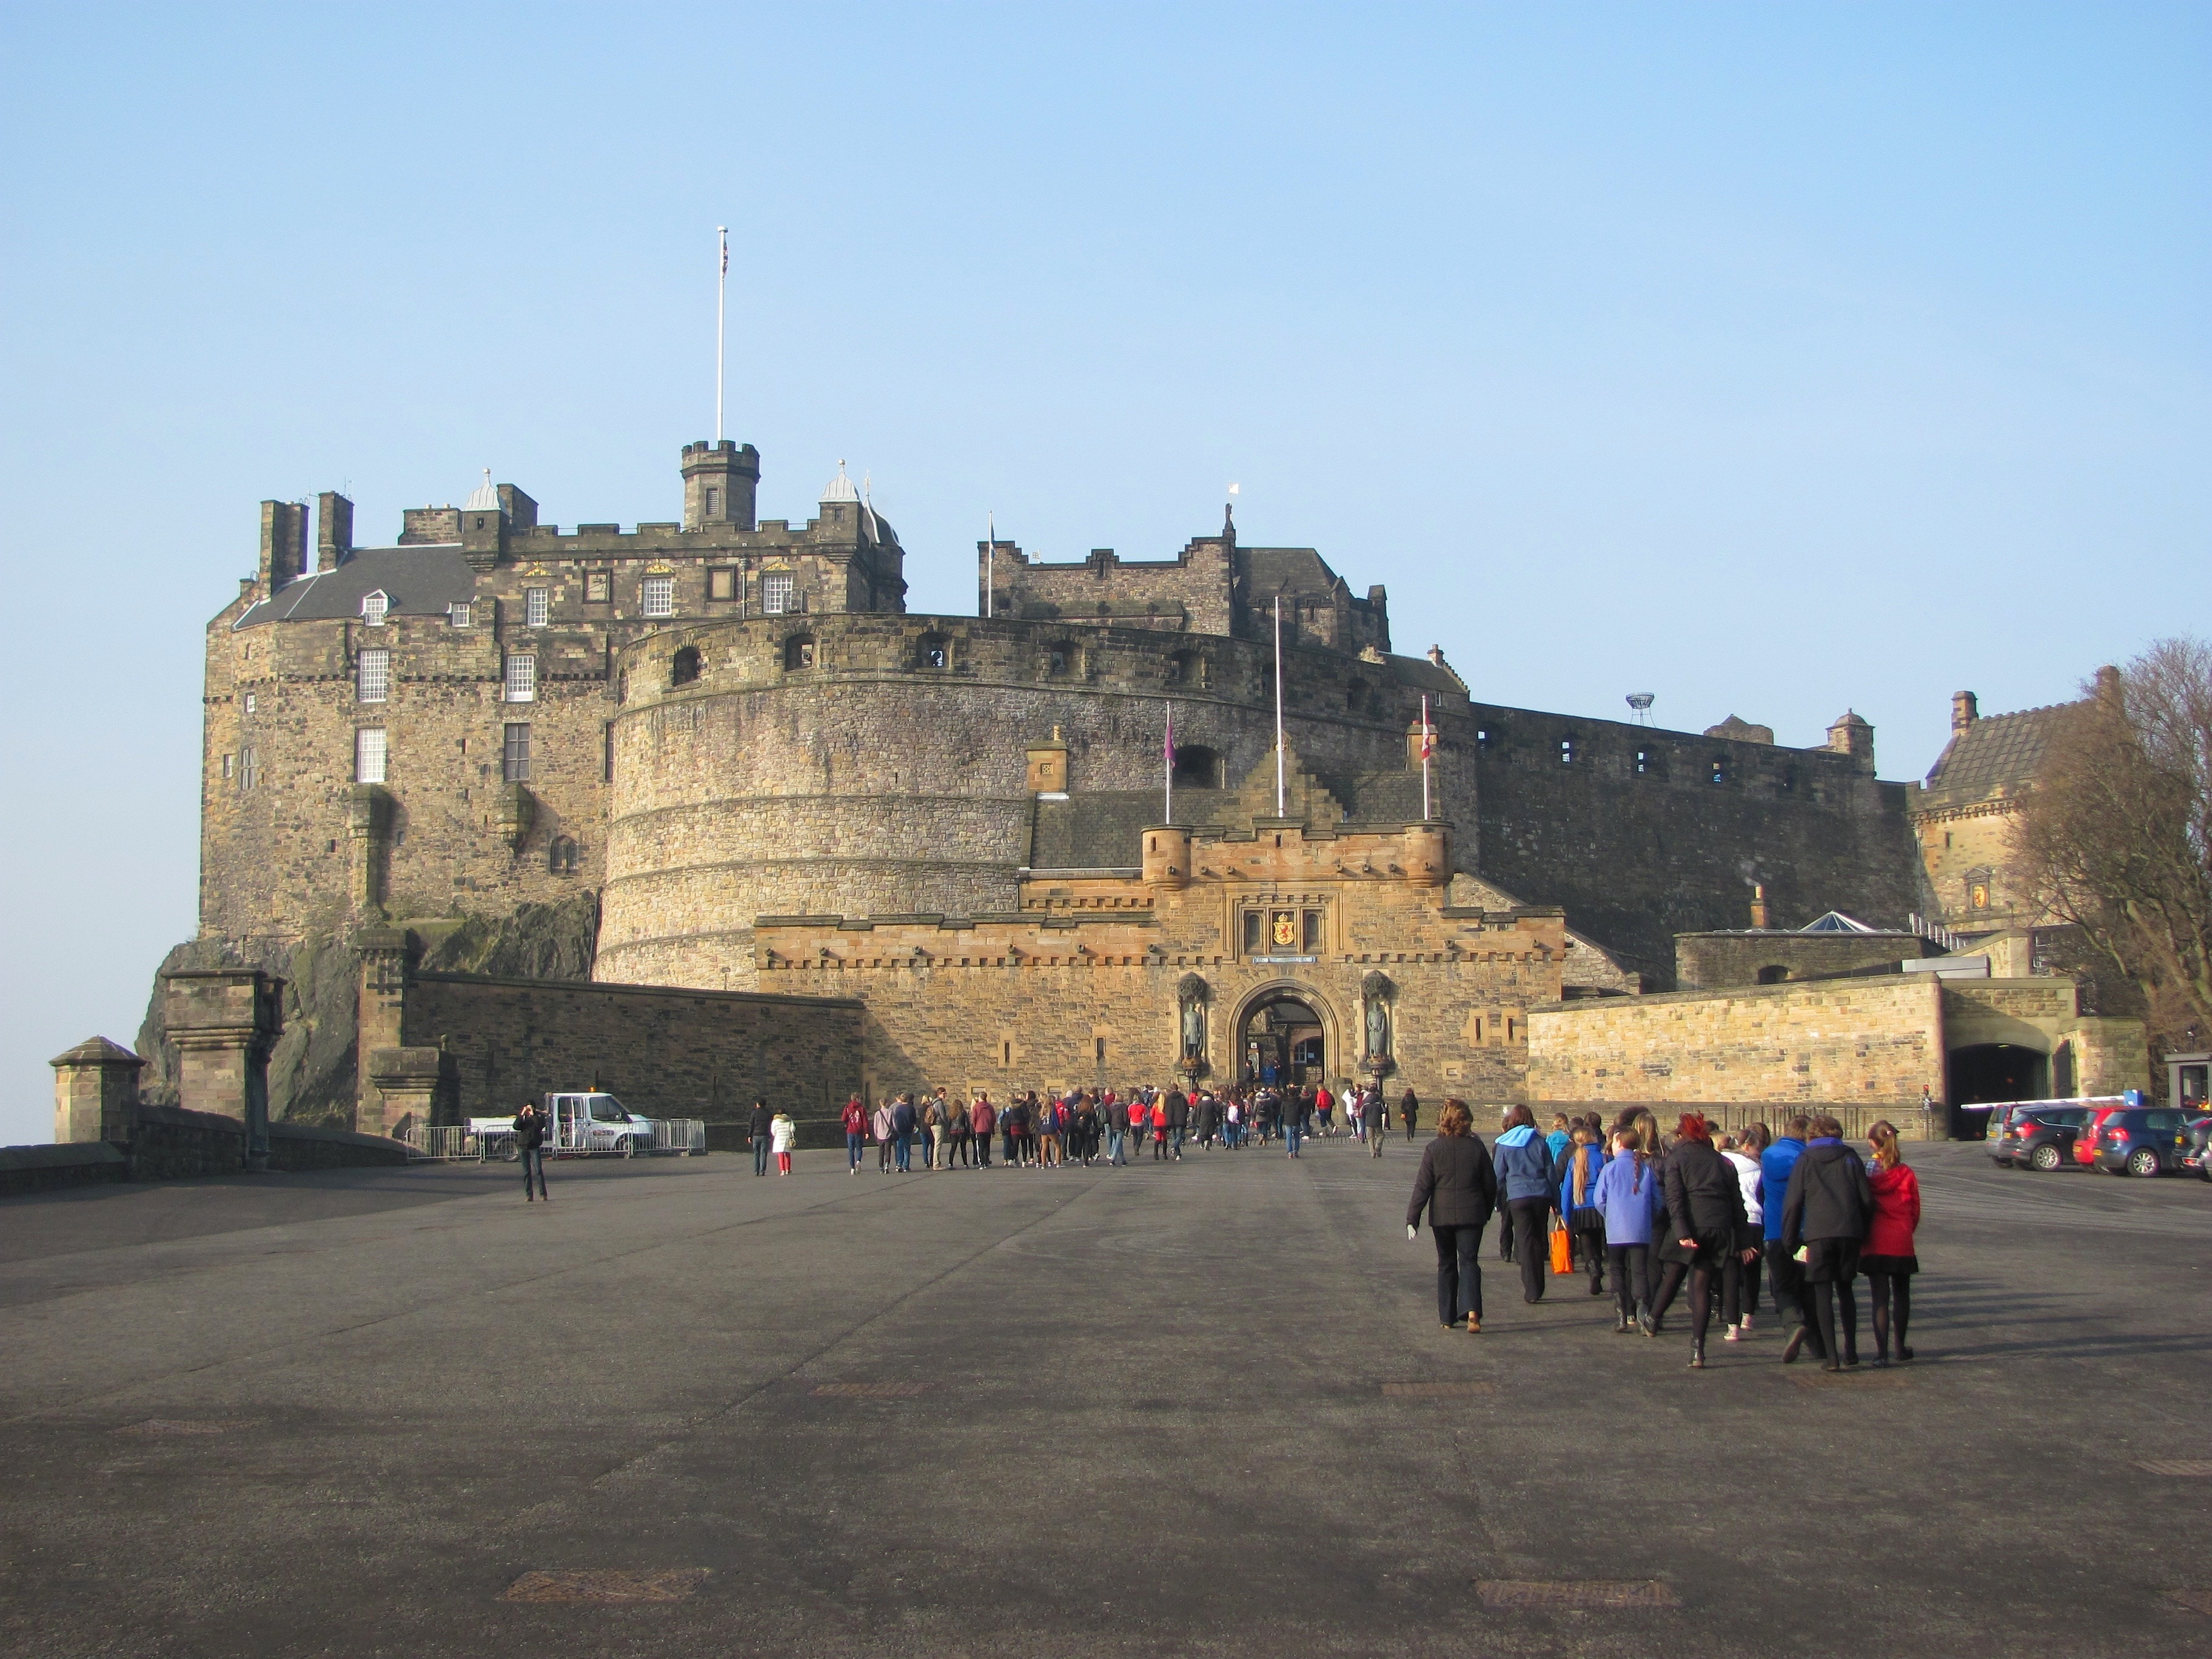 Замок пл. Эдинбургский замок. Эдинбургский замок Шотландия. Замок Эдинбург в Шотландии. Эдинбургский замок Шотландия площадь.